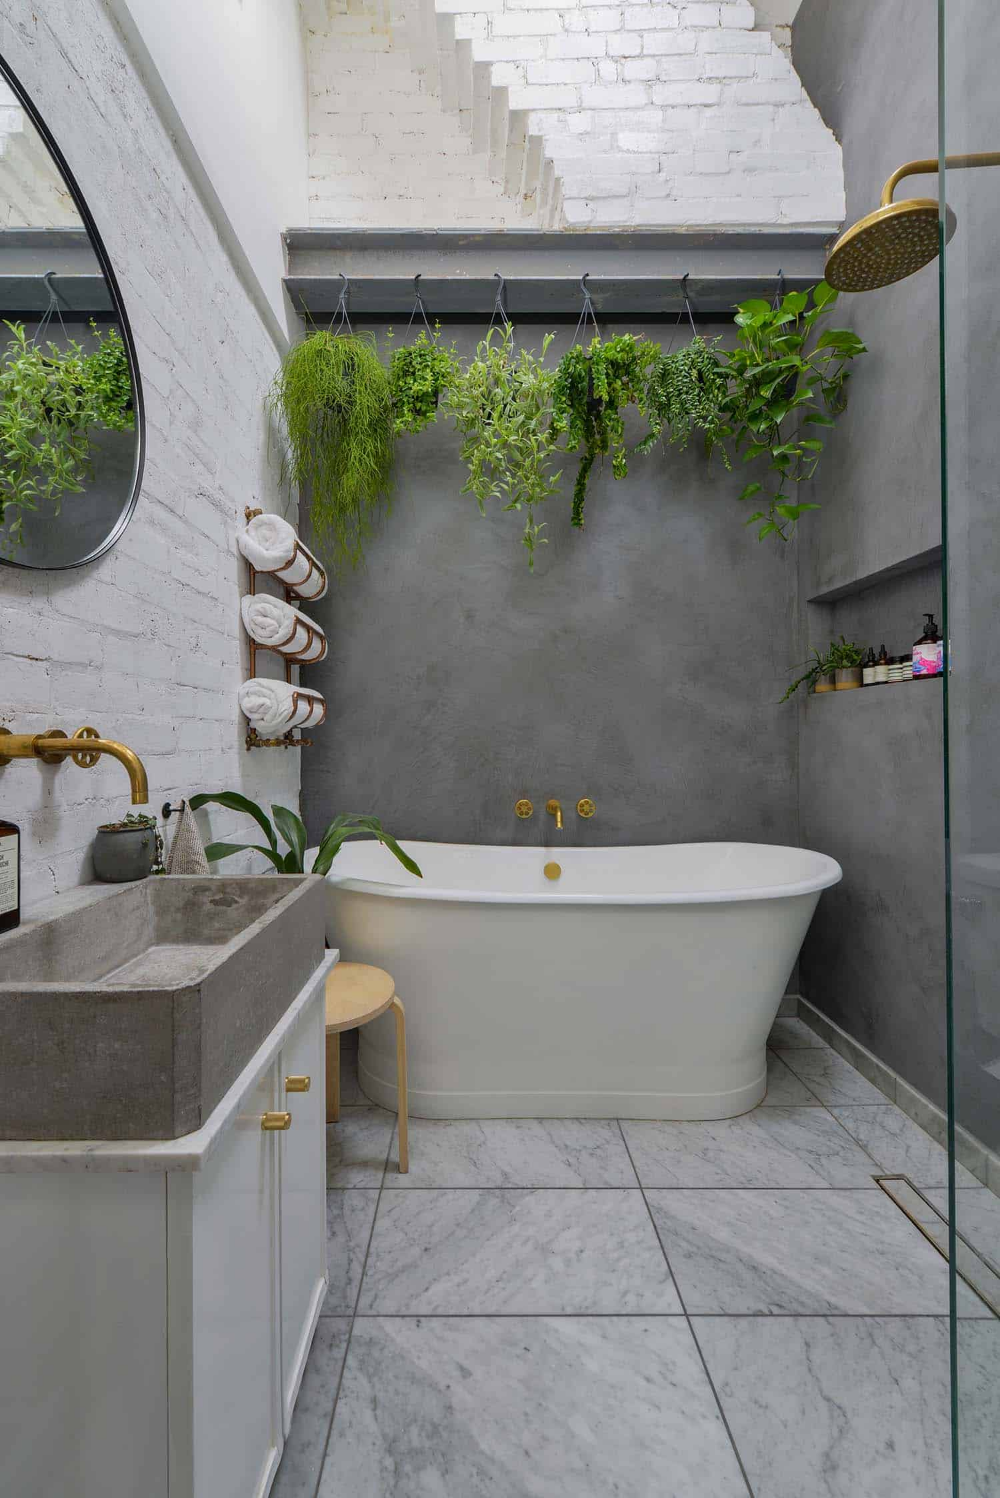 на фото зображено варіант інтер'єру ванної кімнати з укладанням керамічної плитки тільки на підлозі